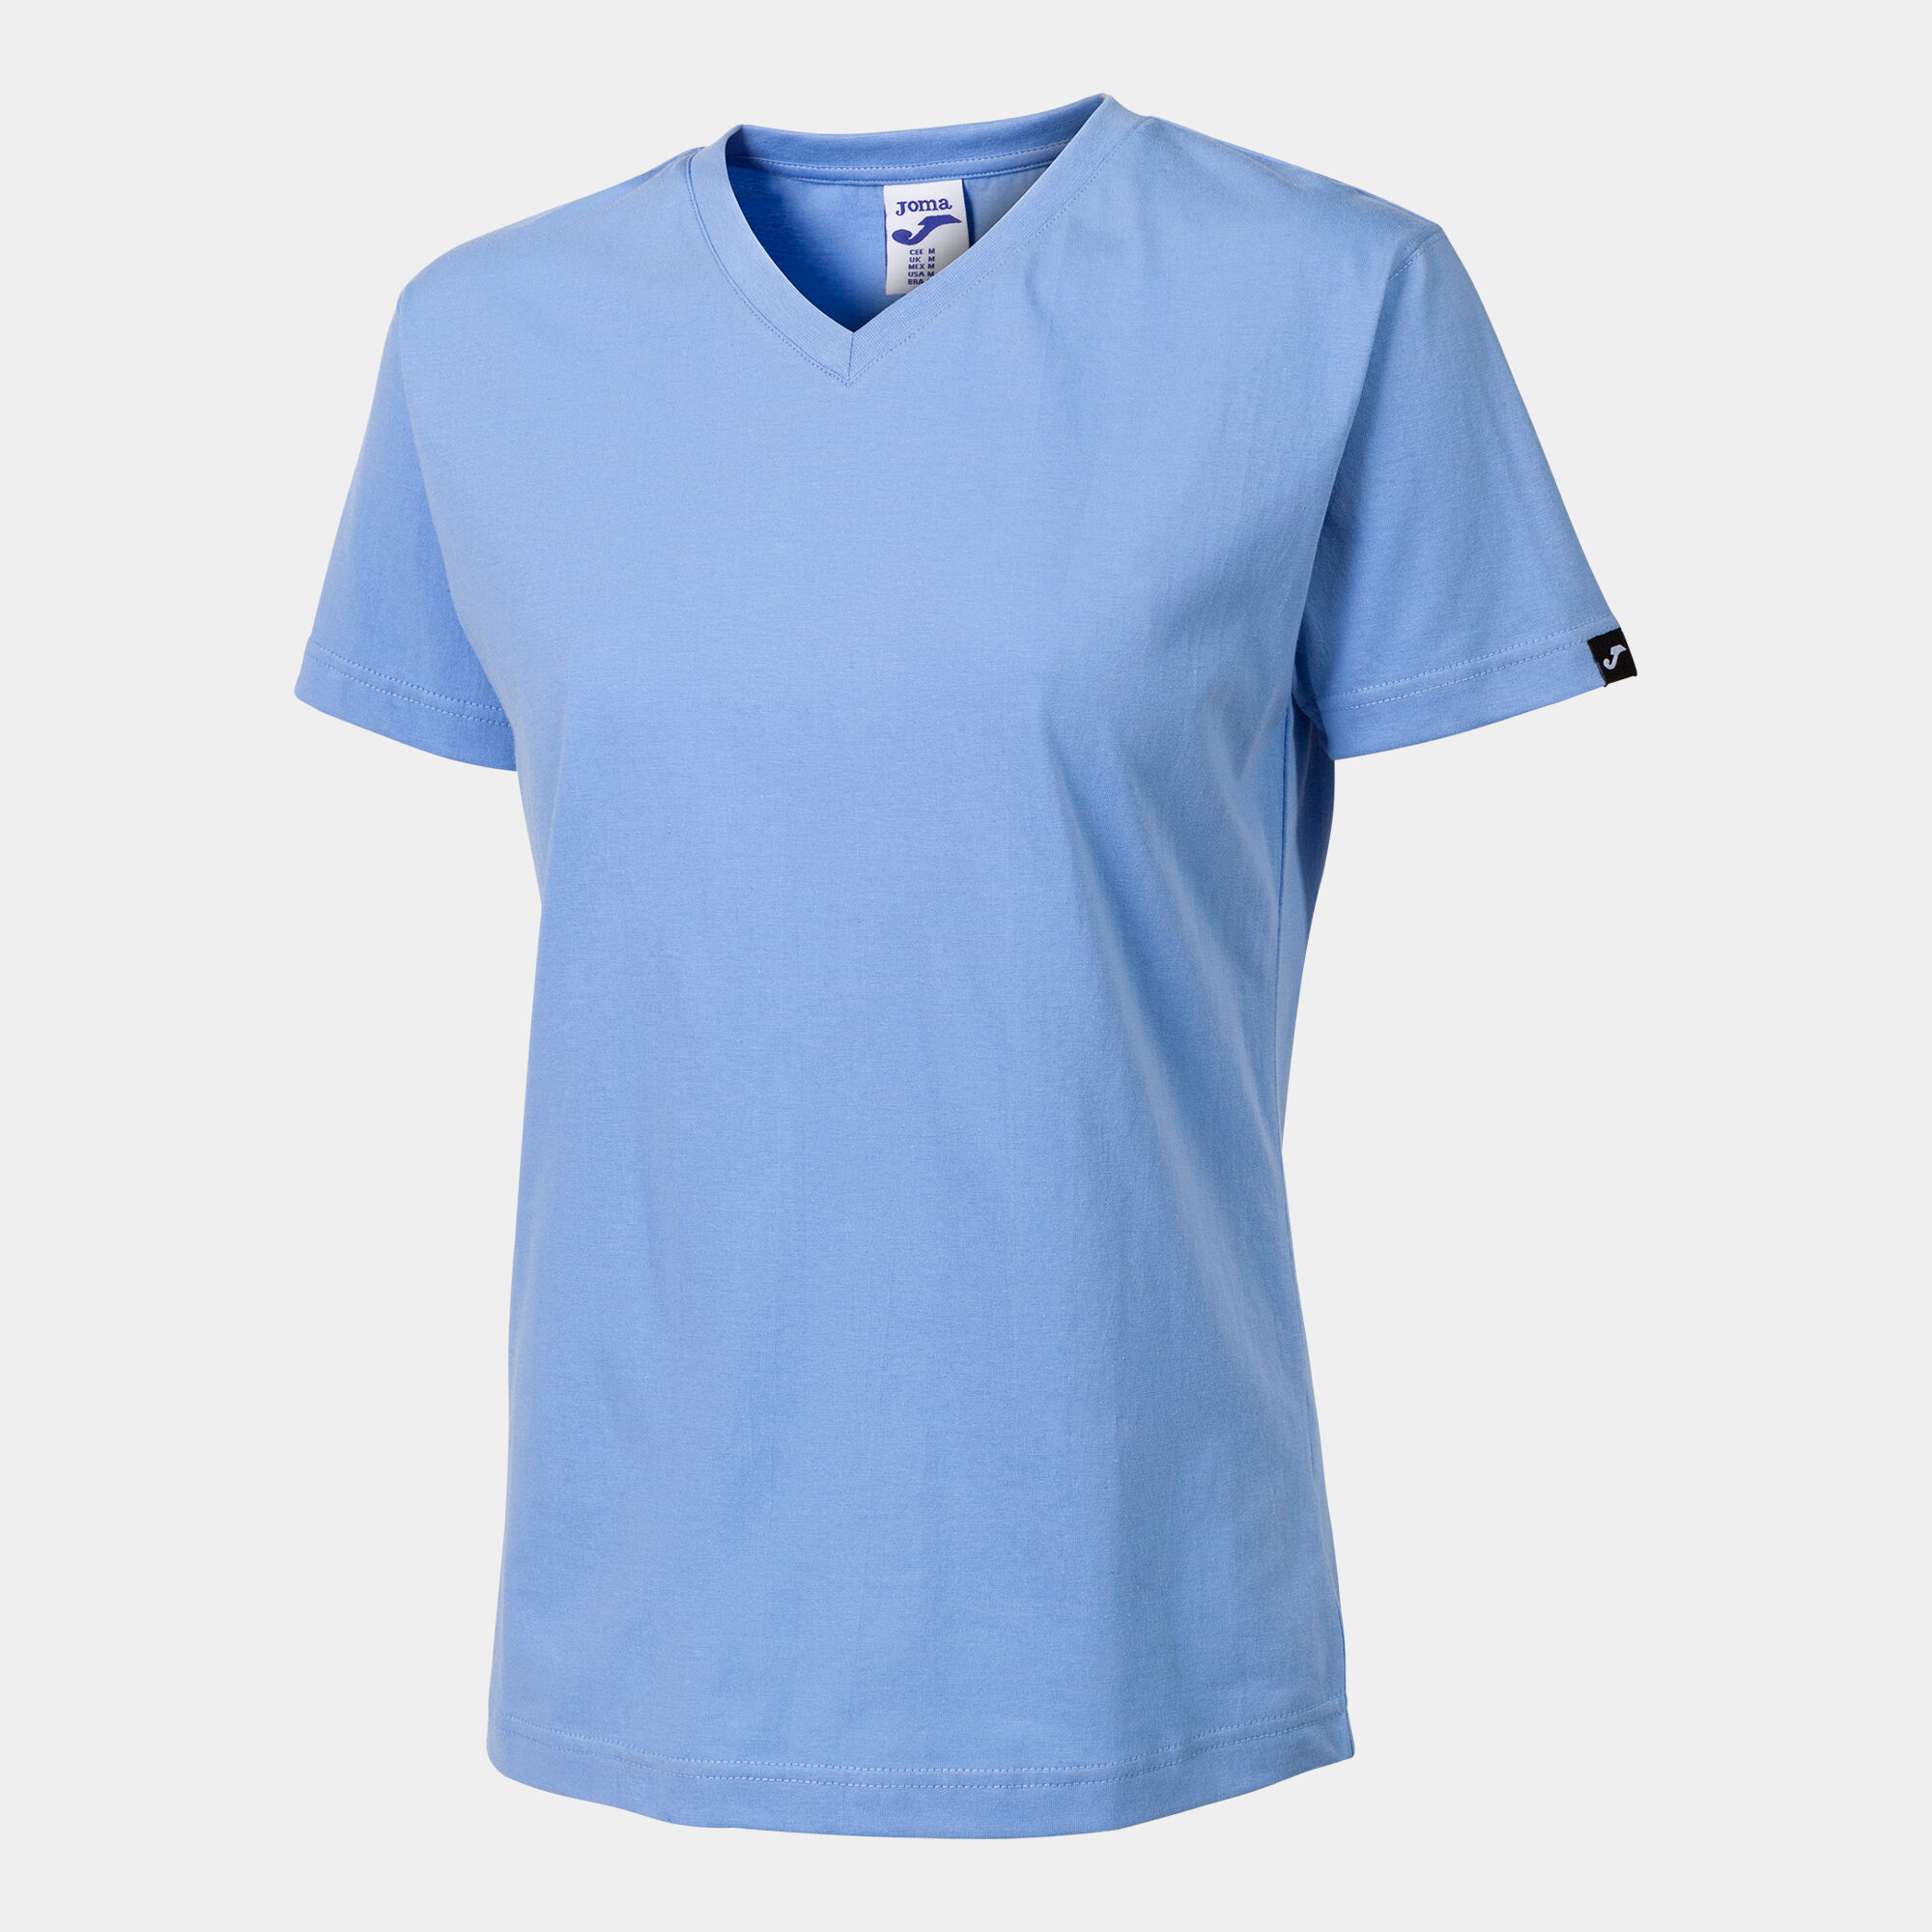 Shirt short sleeve woman Versalles blue